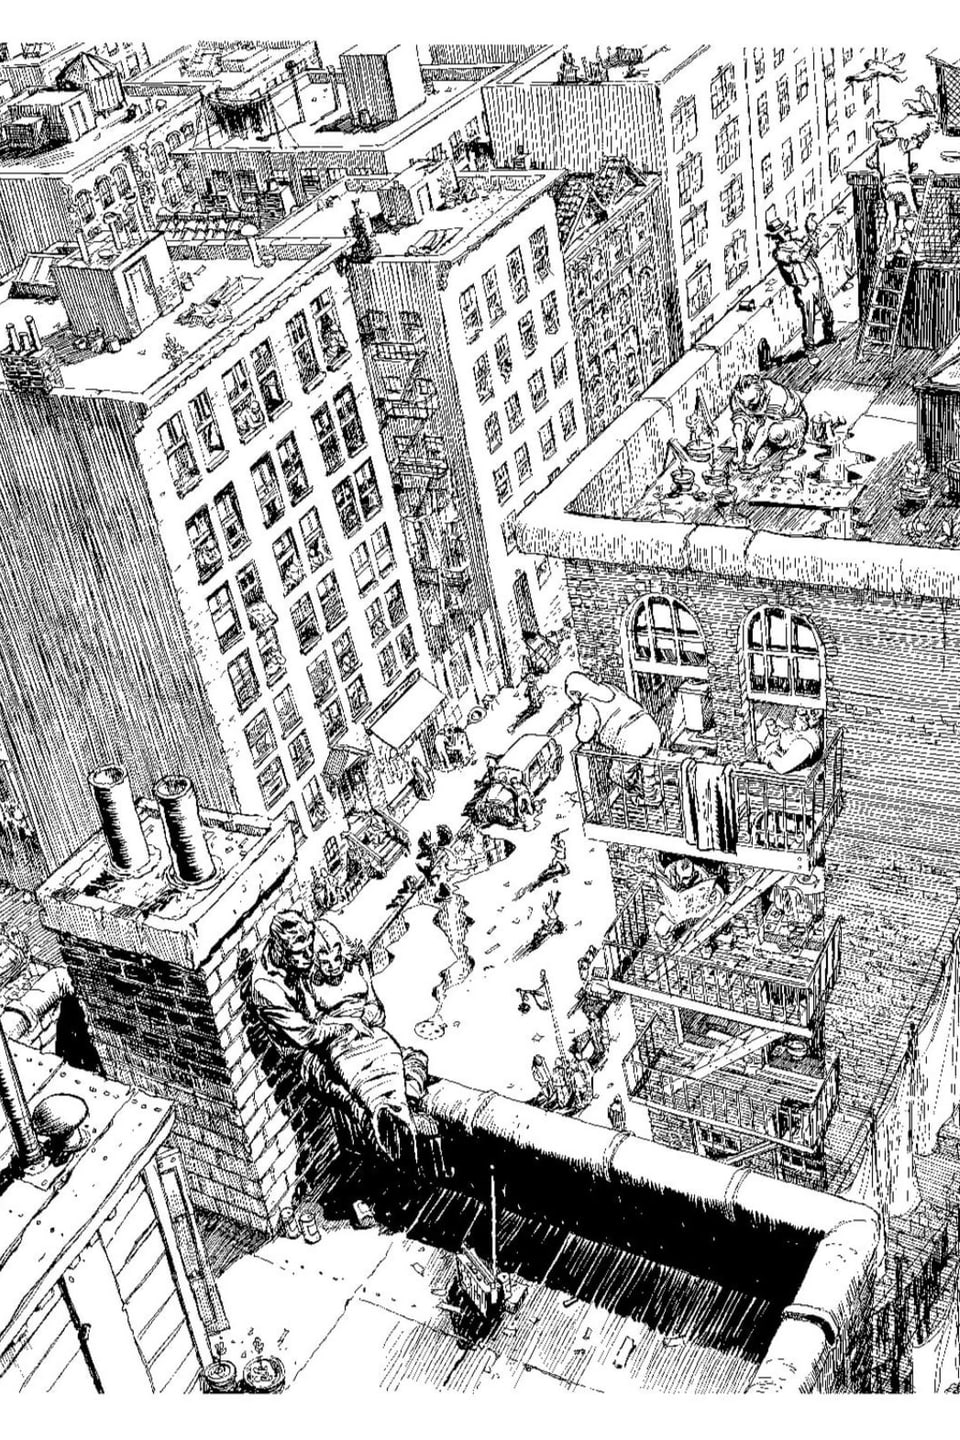 schwarzweiss-Skizze über Hochhaus-Dächern, vorne sitzt ein Paar an Schornstein angelehnt.